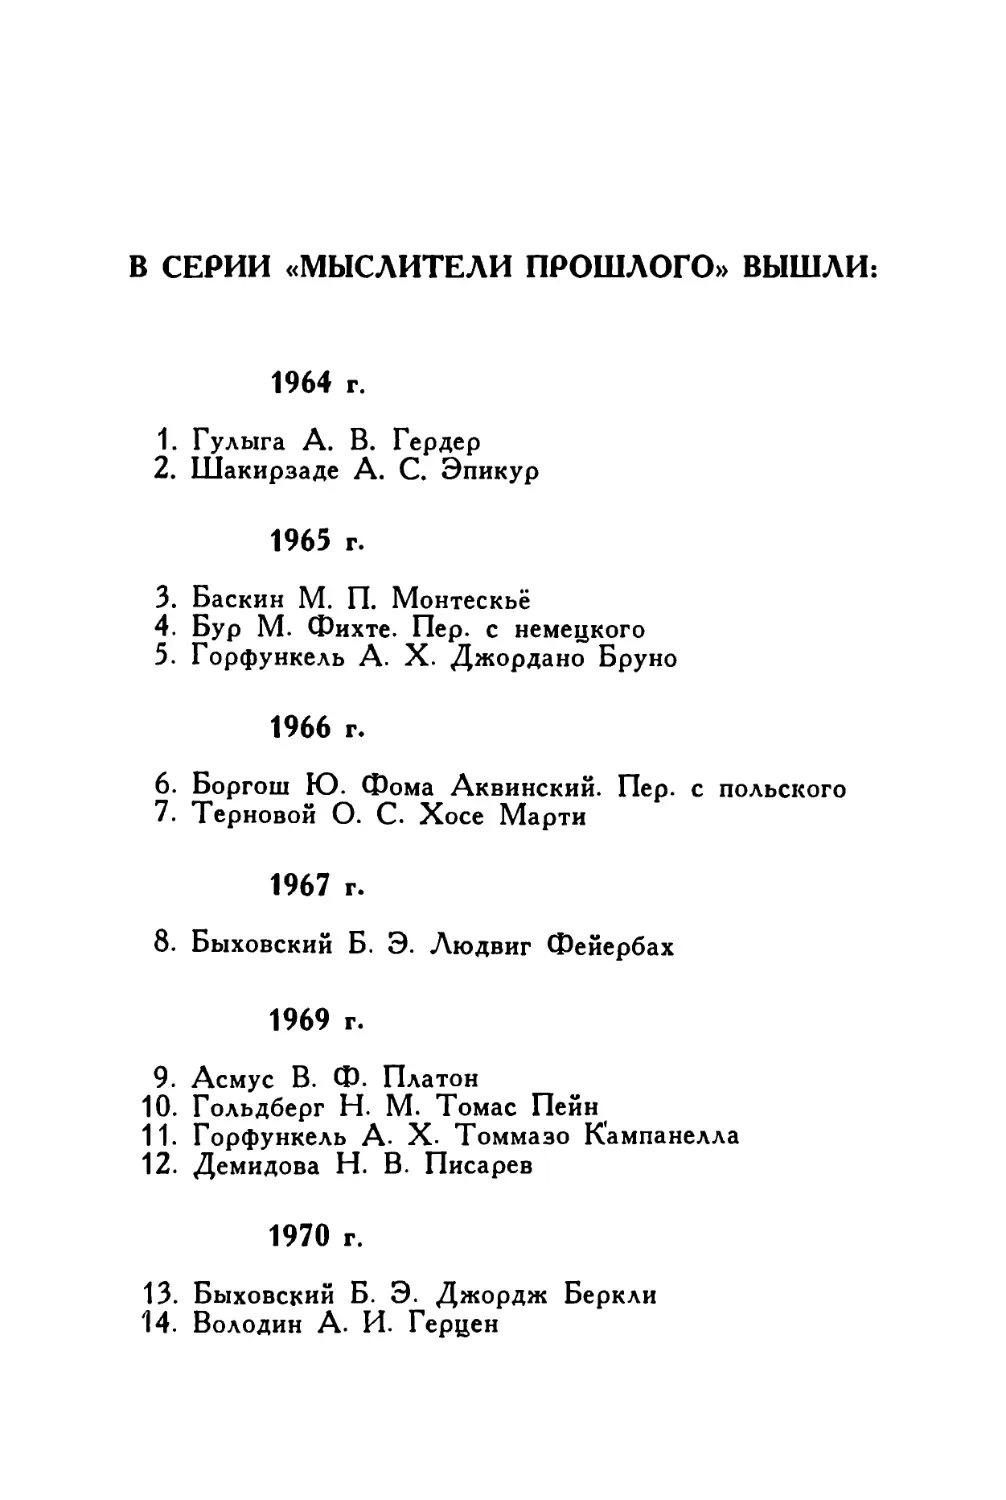 Серия «Мыслители прошлого». Список изданий 1964—1982 гг.